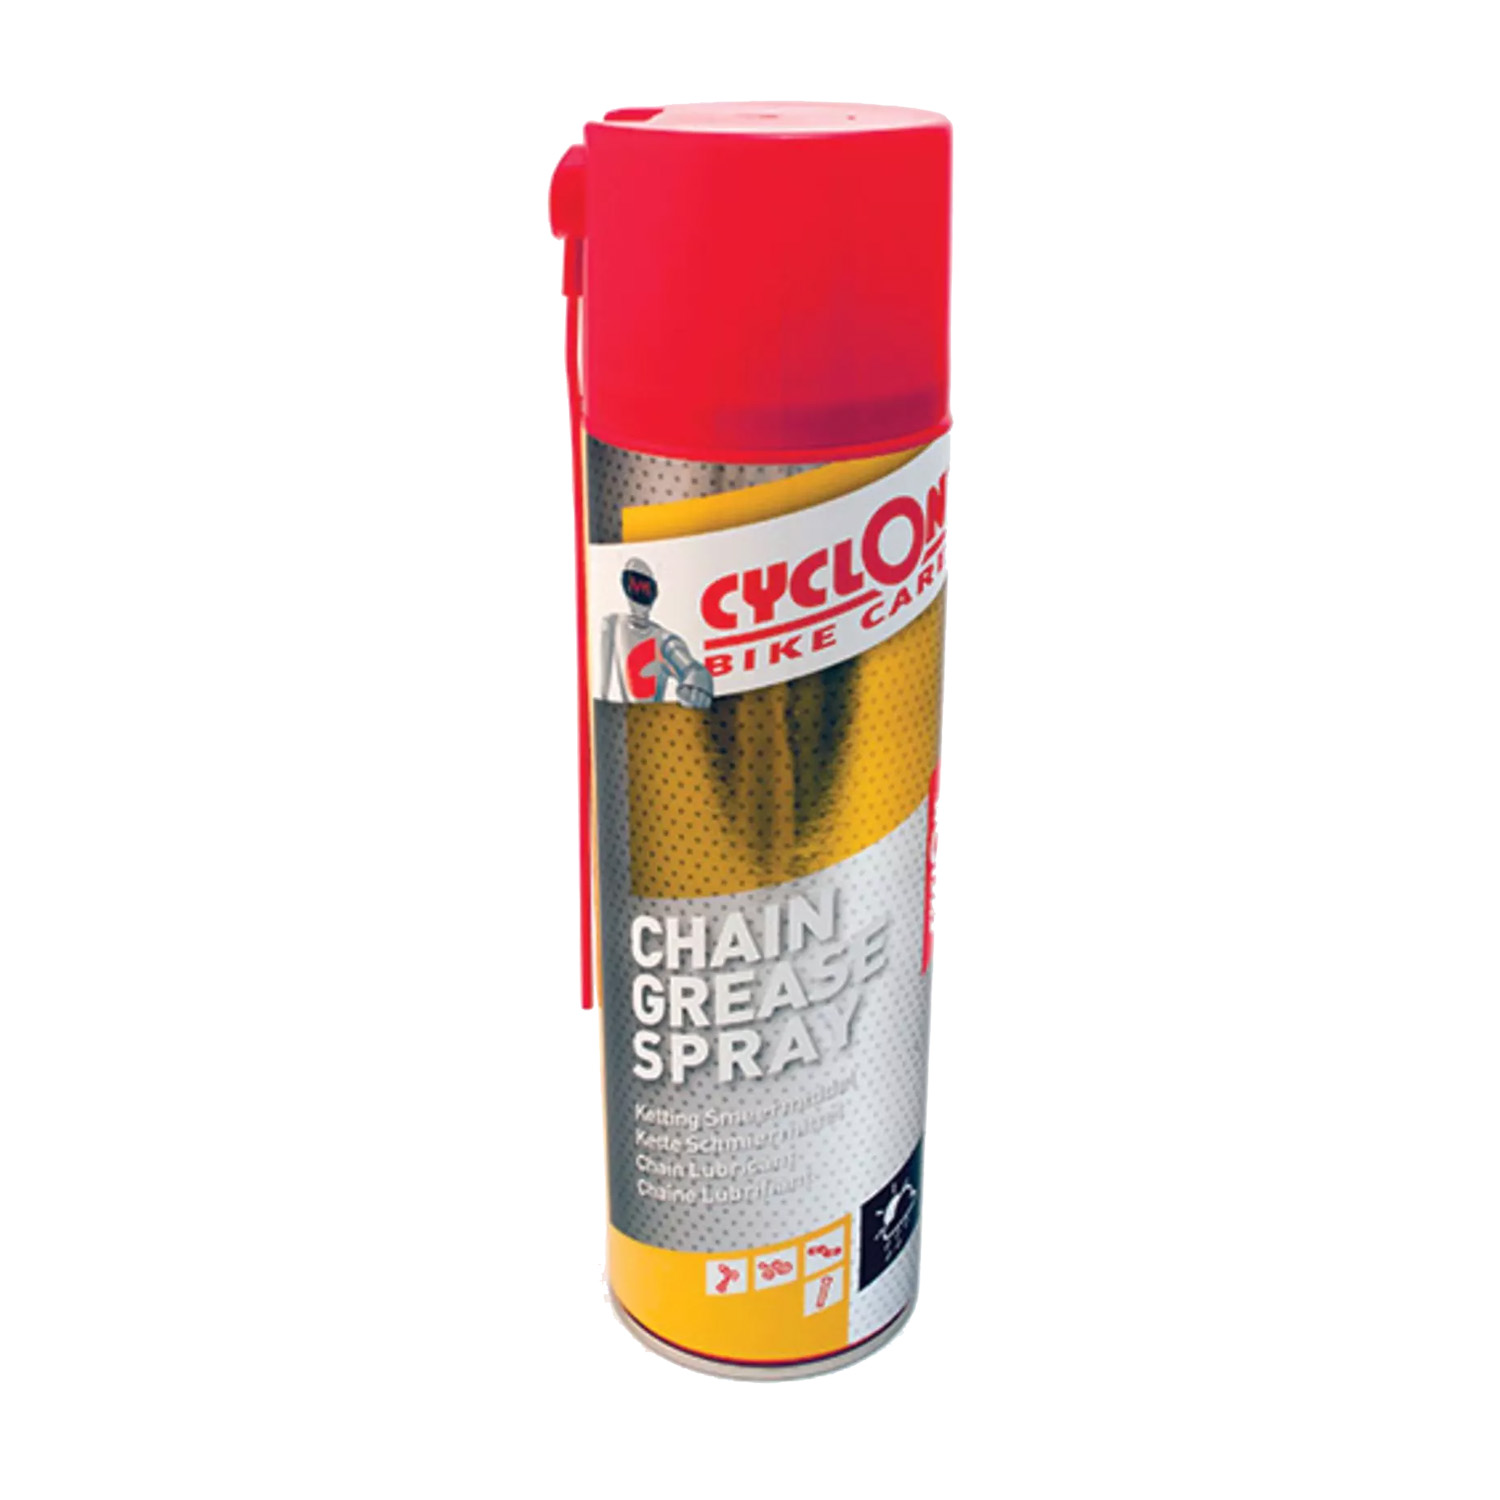 Cyclon Chain grease spray smeermiddel